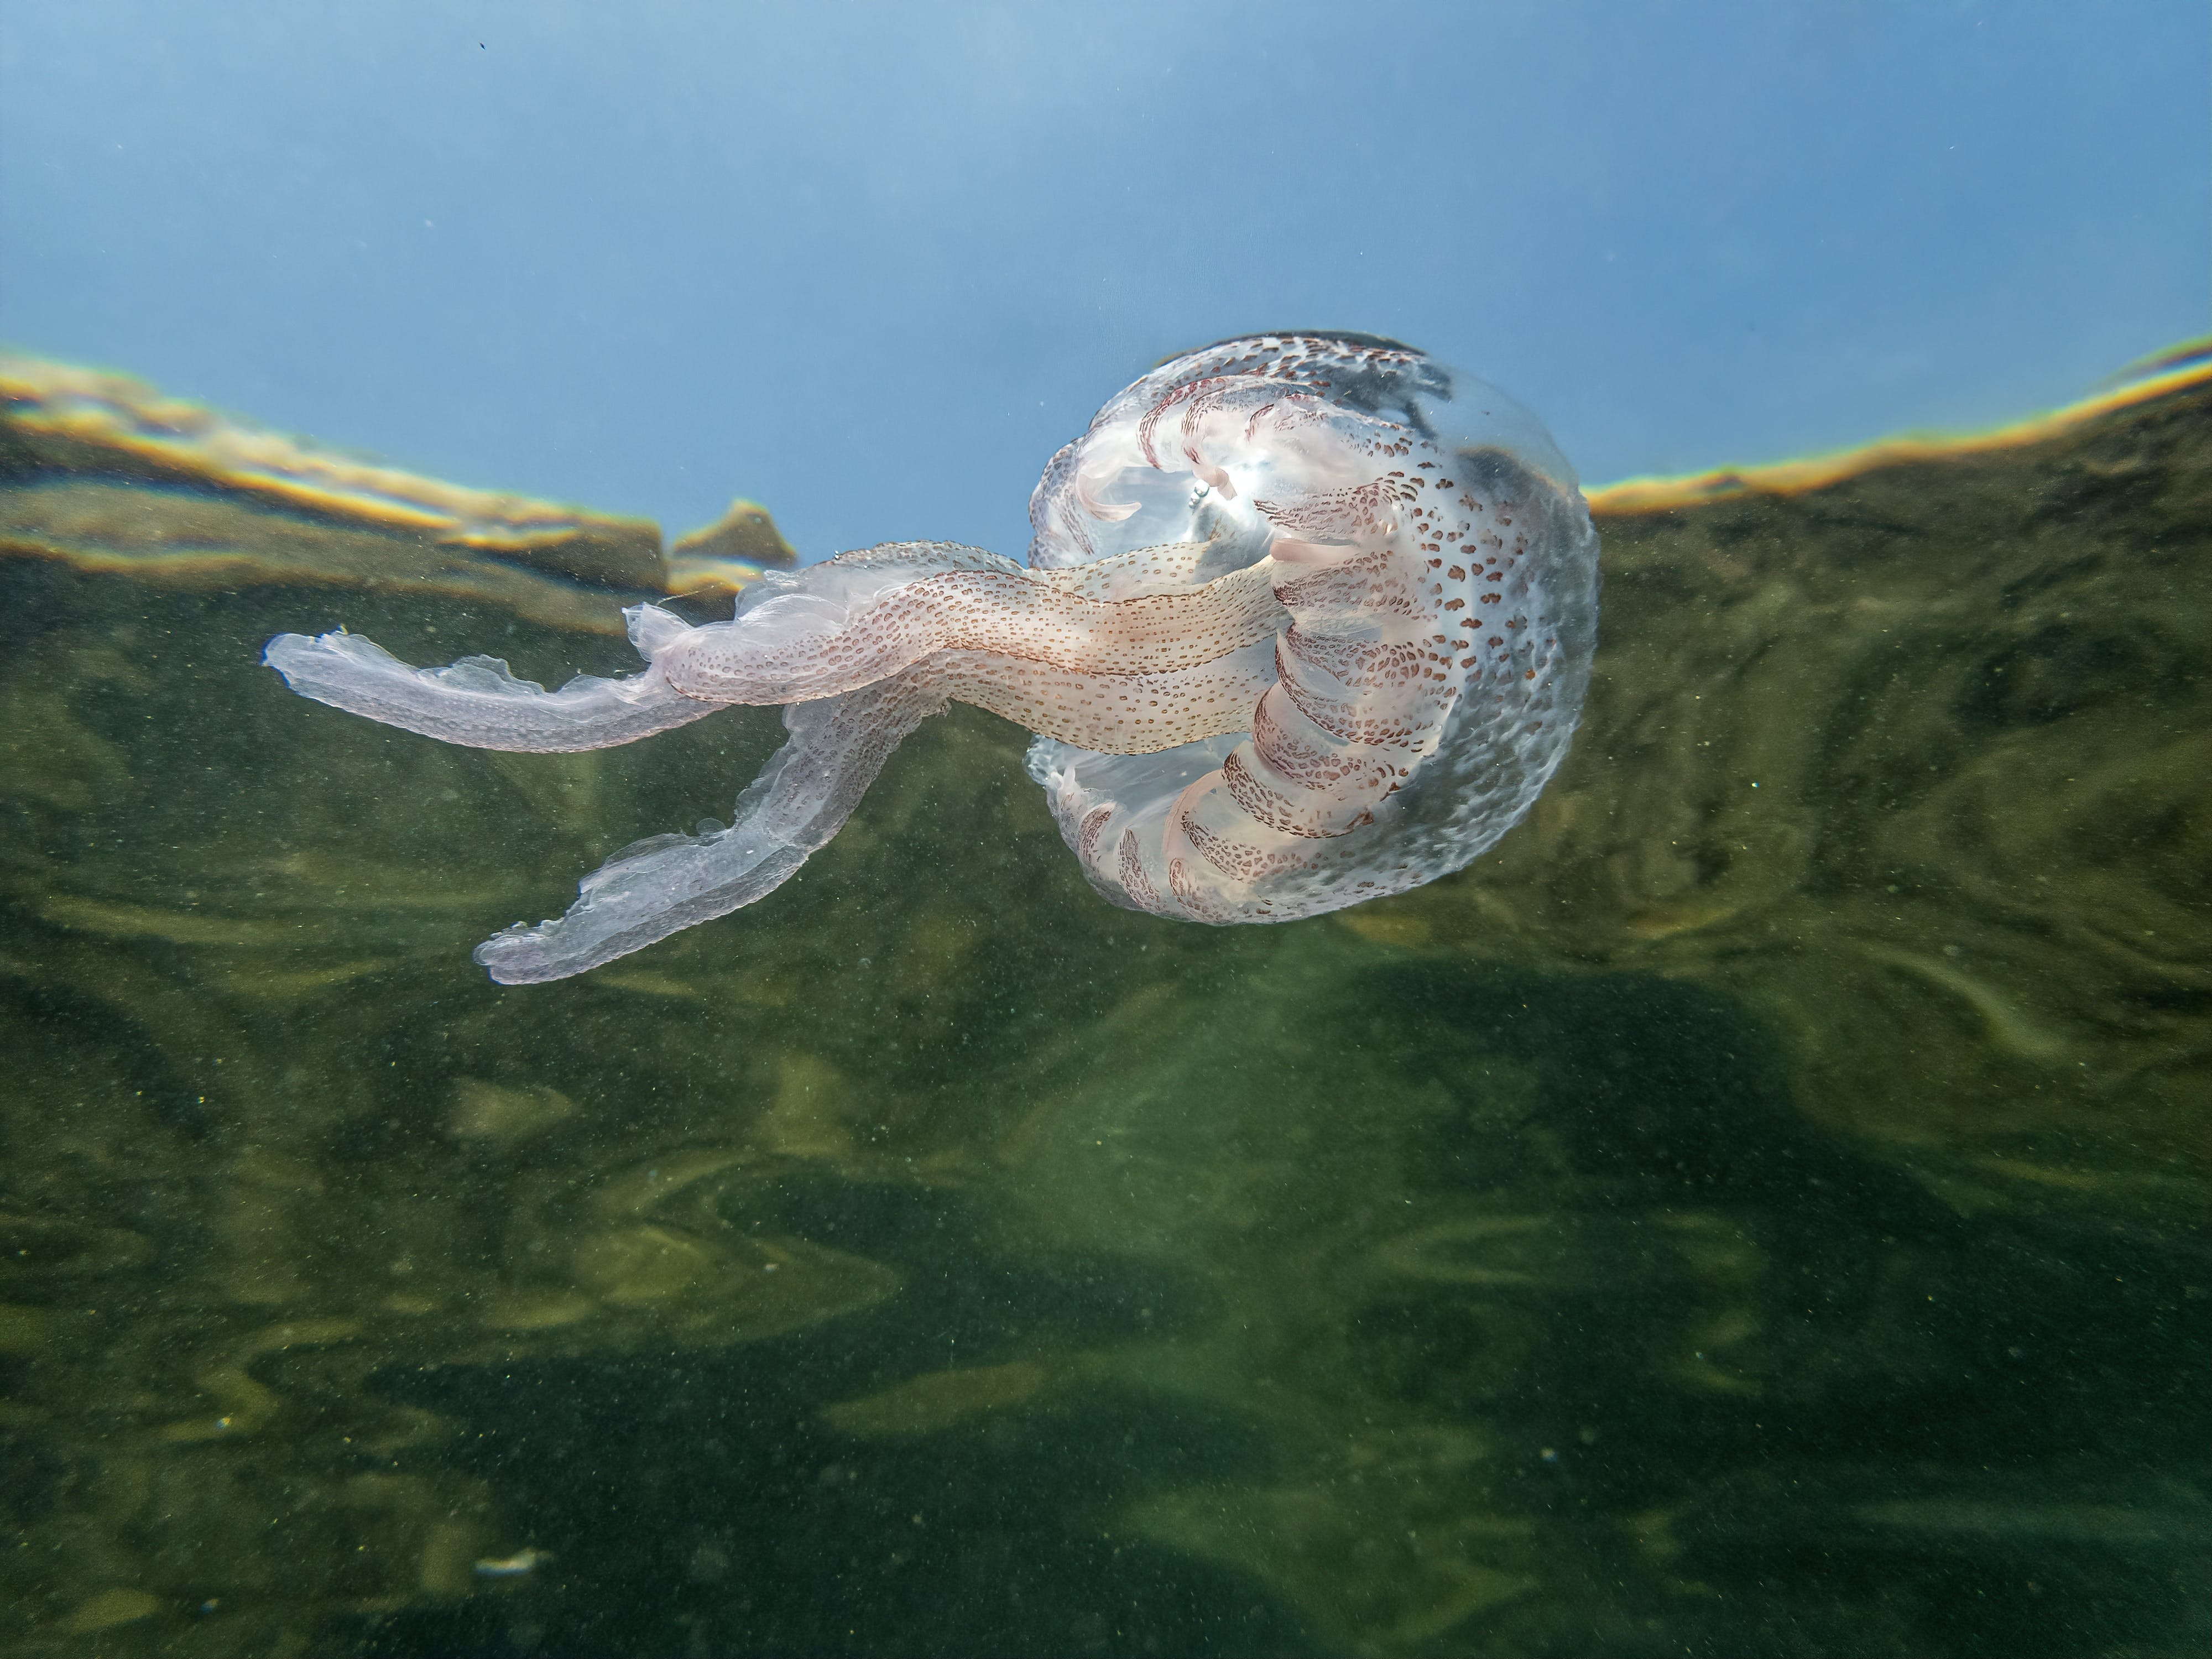 Gratis Fotos de stock gratuitas de bajo el agua, de cerca, Medusa Foto de stock